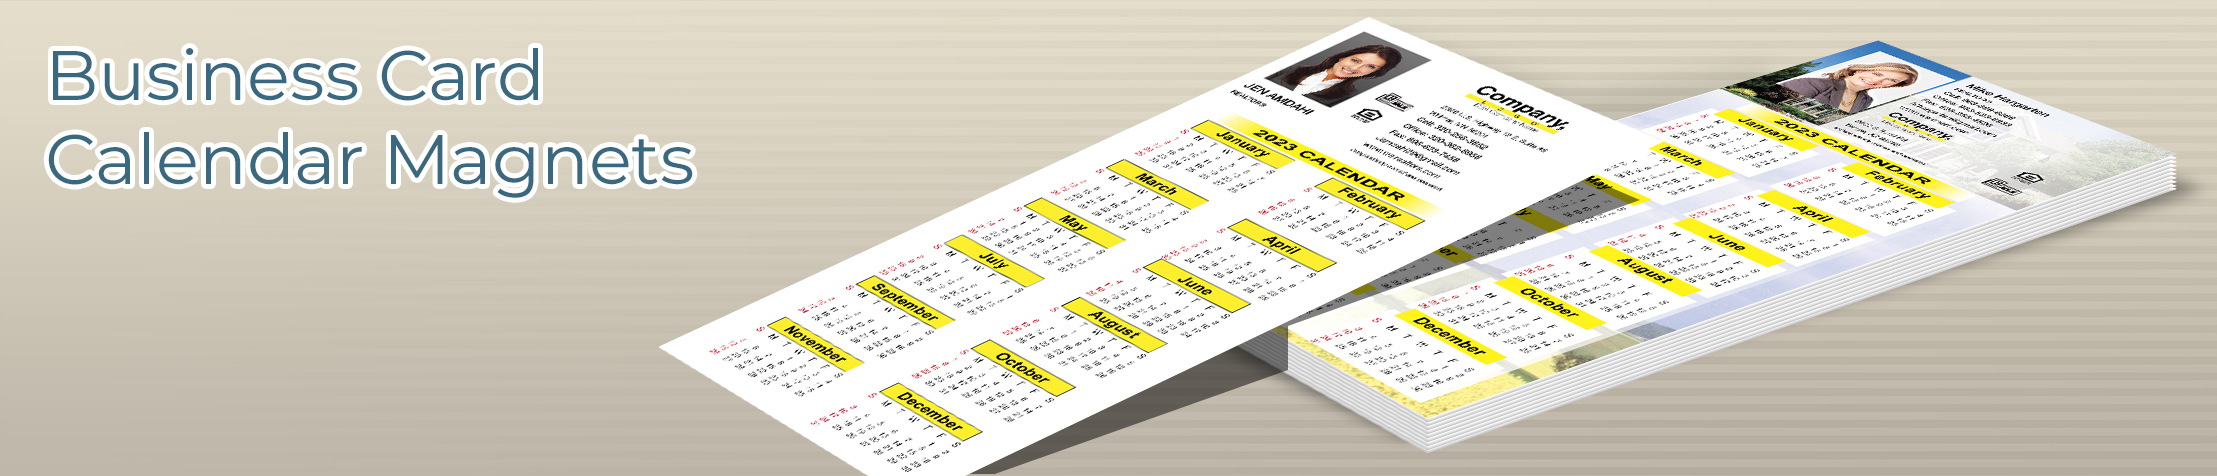 Weichert Real Estate Business Card Calendar Magnets - Weichert  2019 calendars with photo and contact info | BestPrintBuy.com